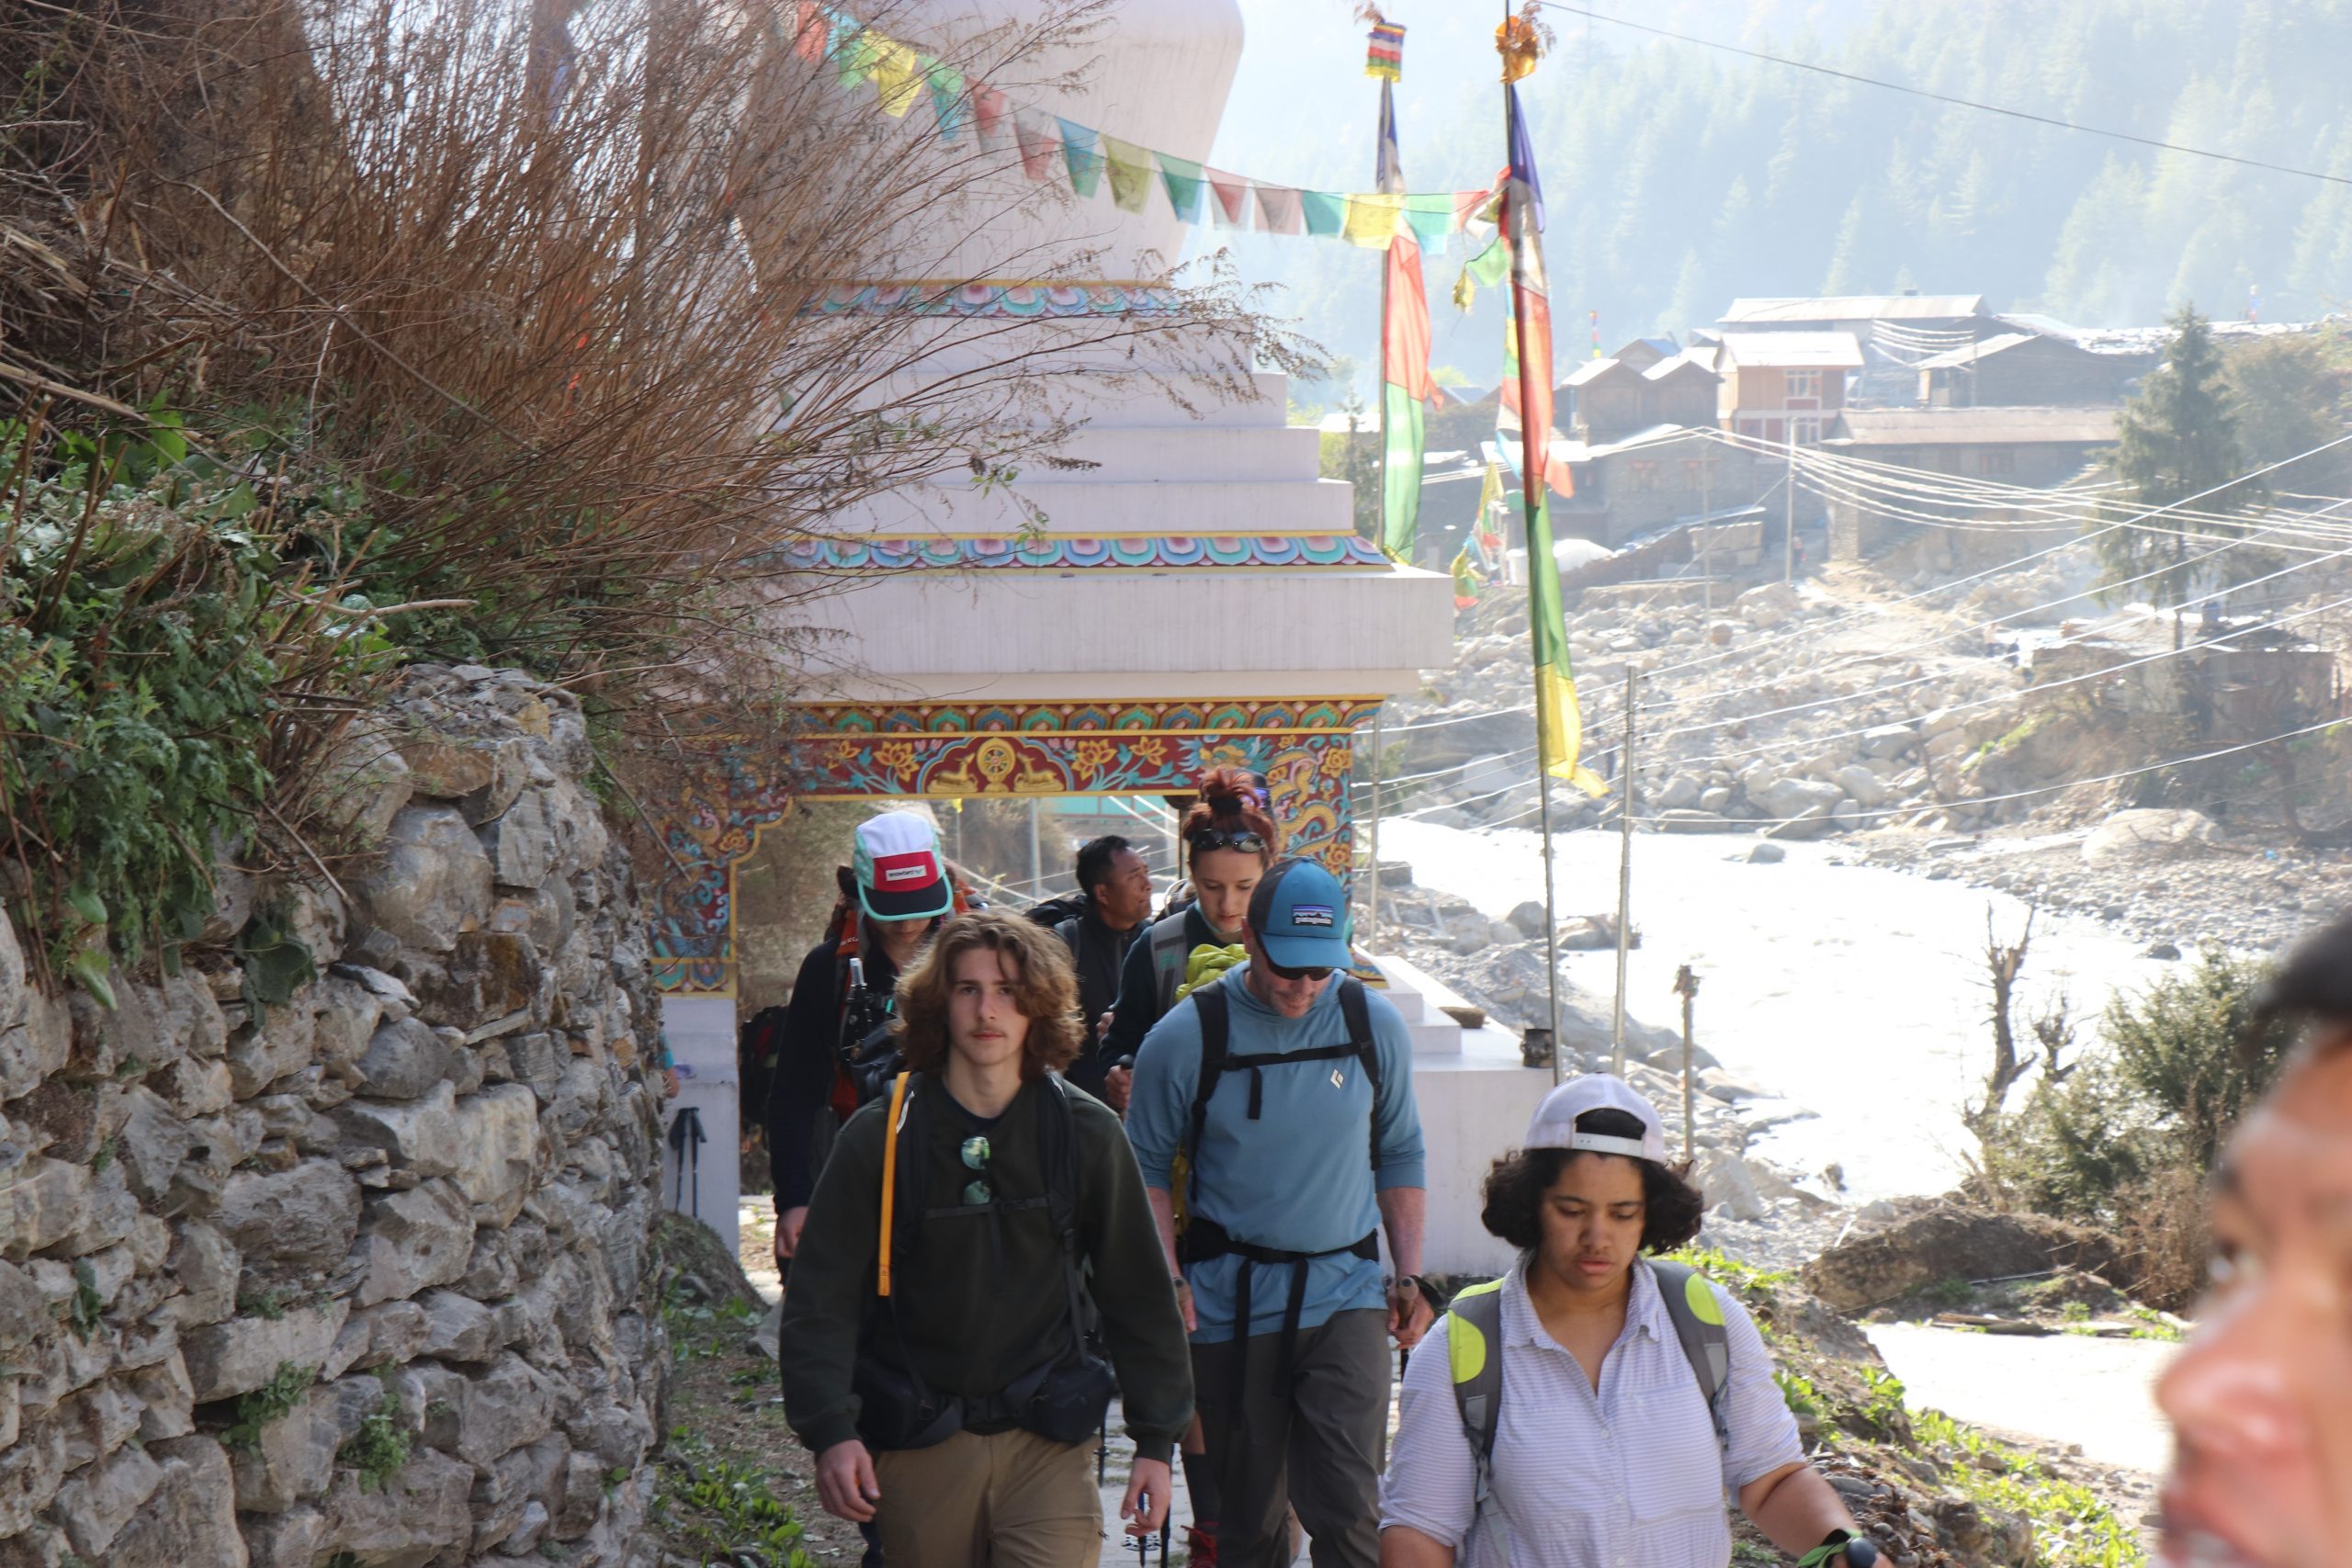 तीन महिनामा १८७ देशबाट एक लाख ६० हजारभन्दा बढी पर्यटक नेपाल घुम्न आए